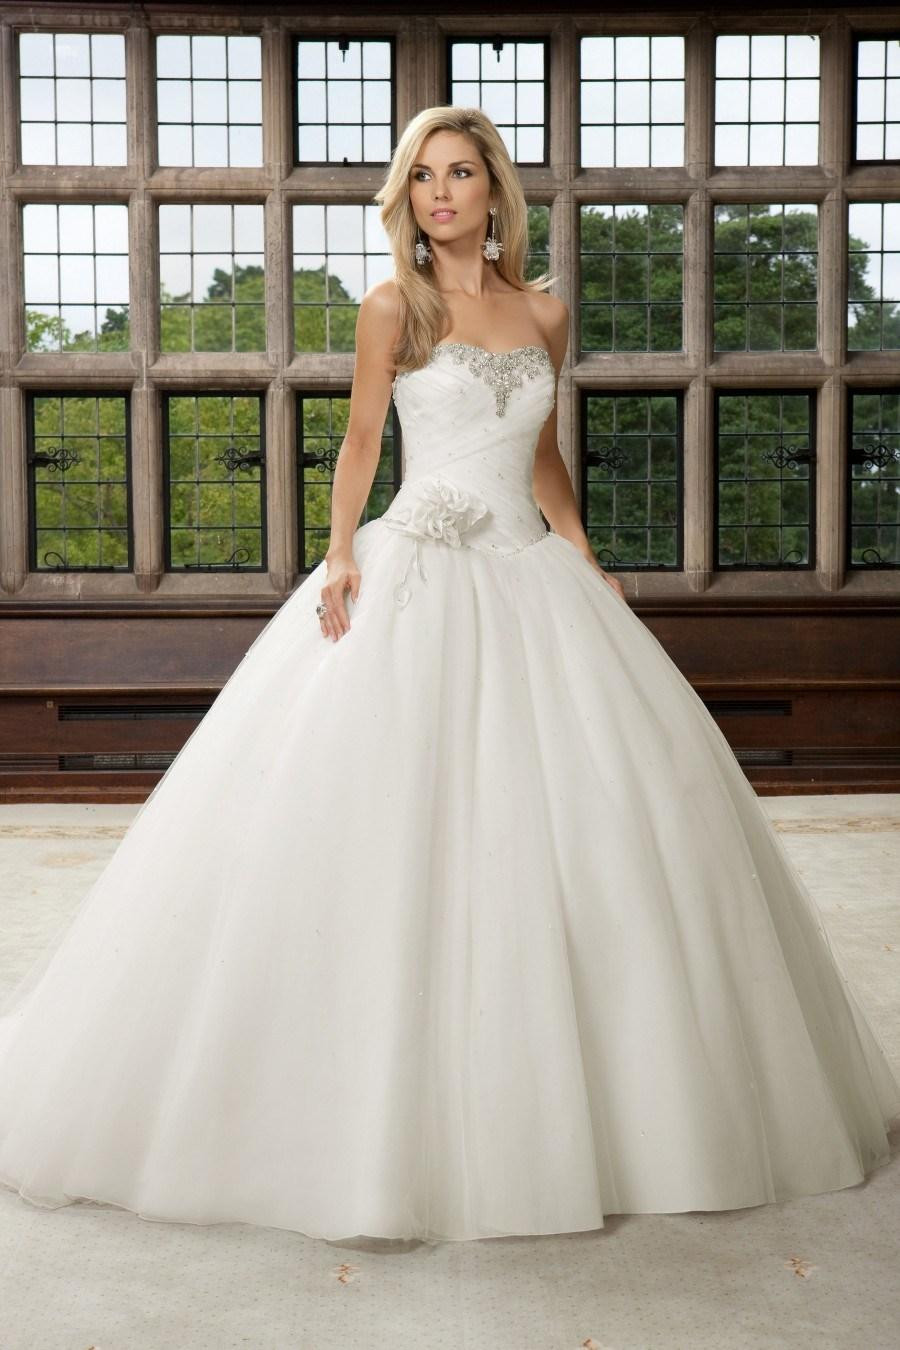 Cinderella Wedding Gowns
 Cinderella Ball Gown Wedding Dress Wedding and Bridal